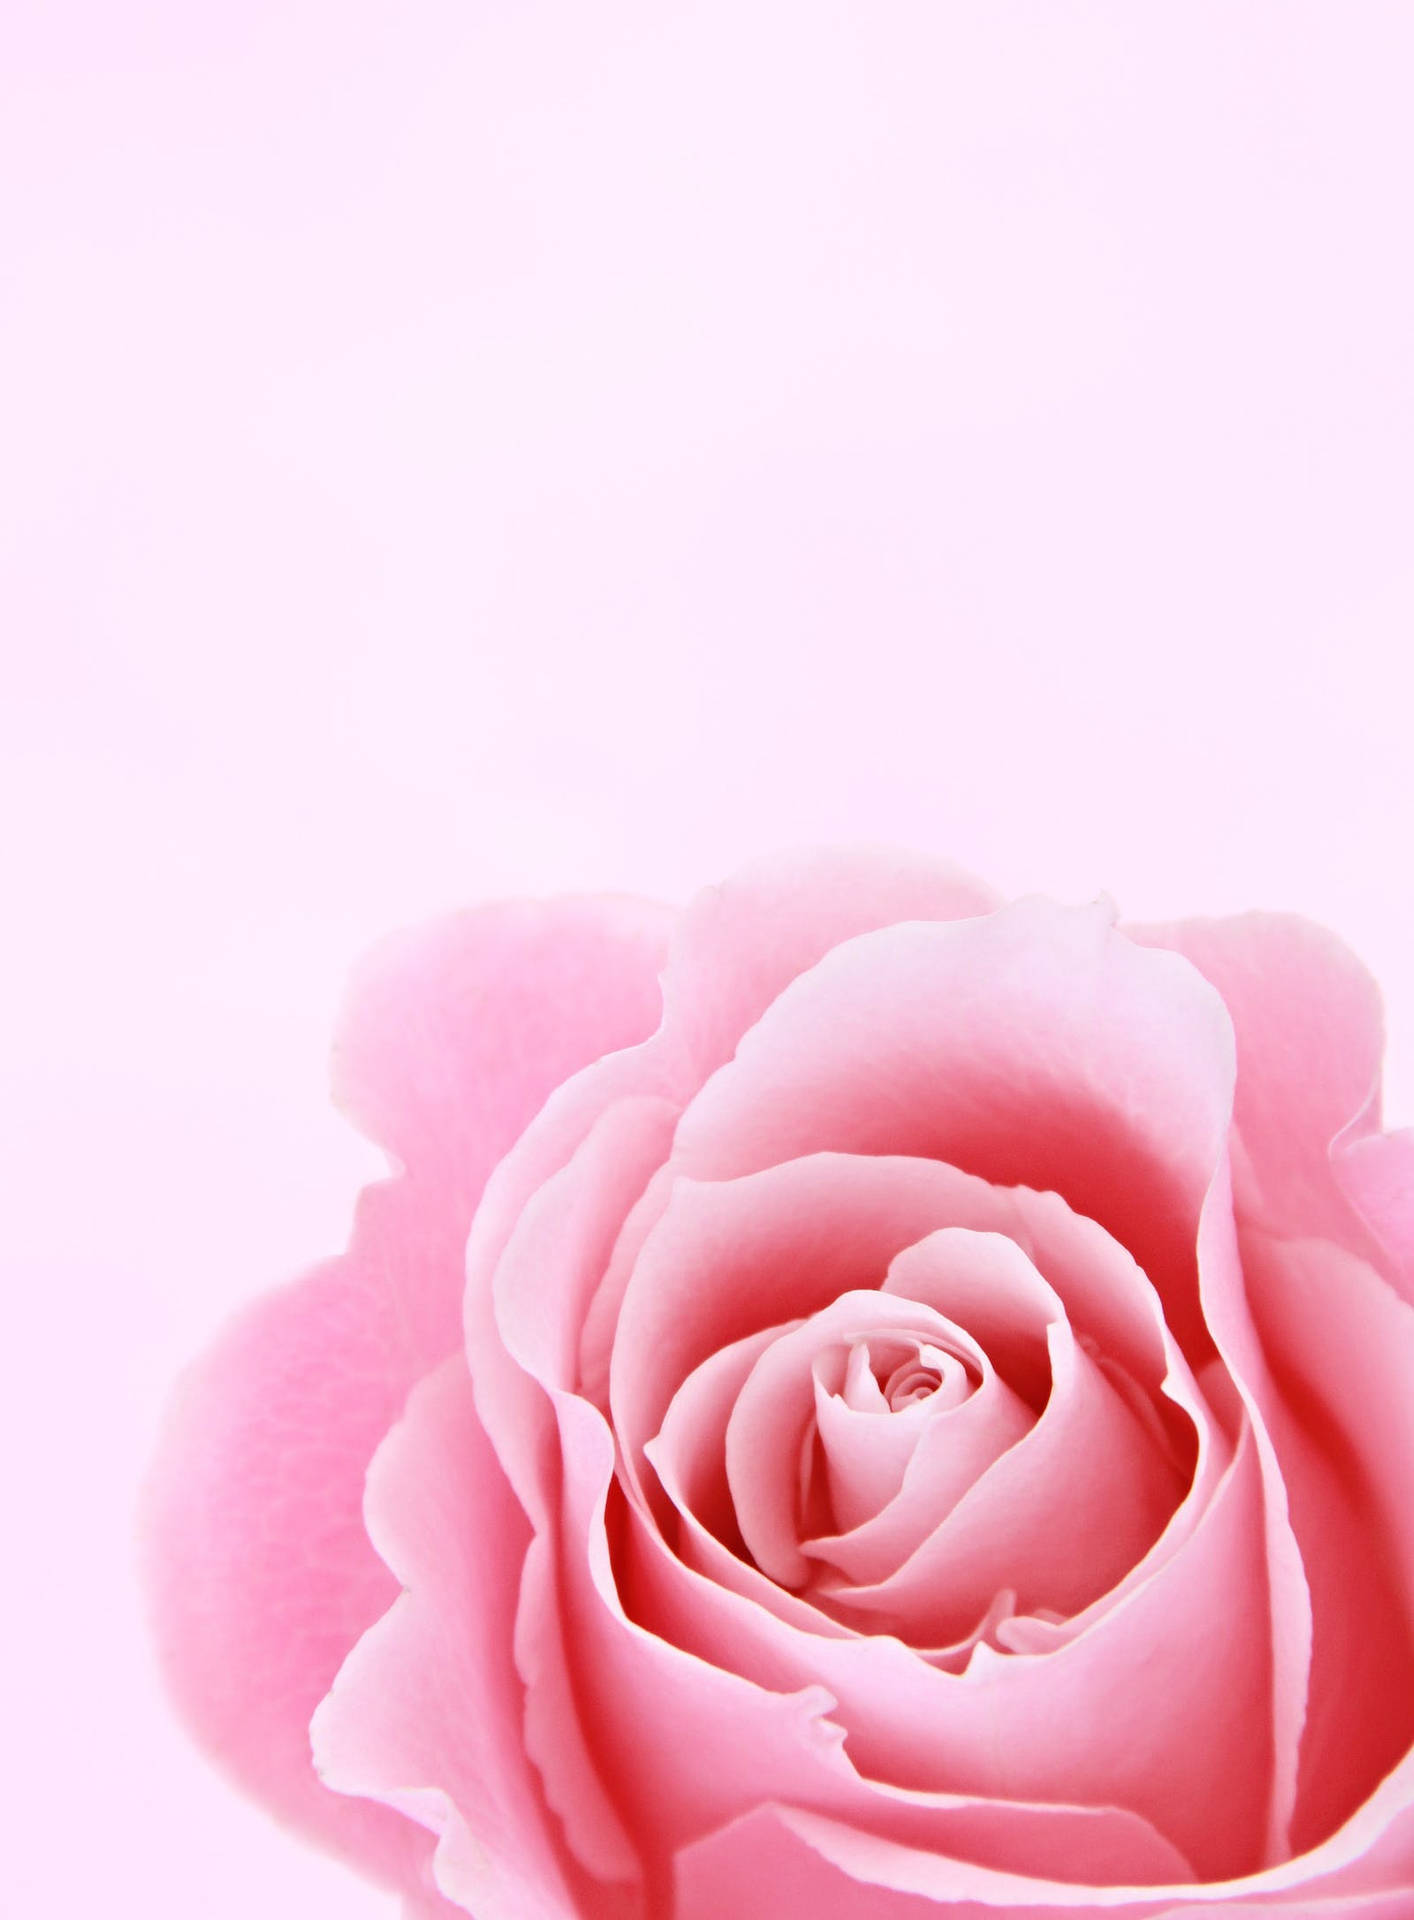 Hình nền hoa hồng màu hồng sẽ làm bạn say đắm ngay từ cái nhìn đầu tiên. Với loại hình nền này, bạn sẽ được đắm mình trong màu hồng tươi sáng của những bông hoa hồng quyến rũ và gợi cảm. Chắc chắn bạn sẽ không thể bỏ qua cơ hội chiêm ngưỡng một tác phẩm nghệ thuật đẹp như thế này.